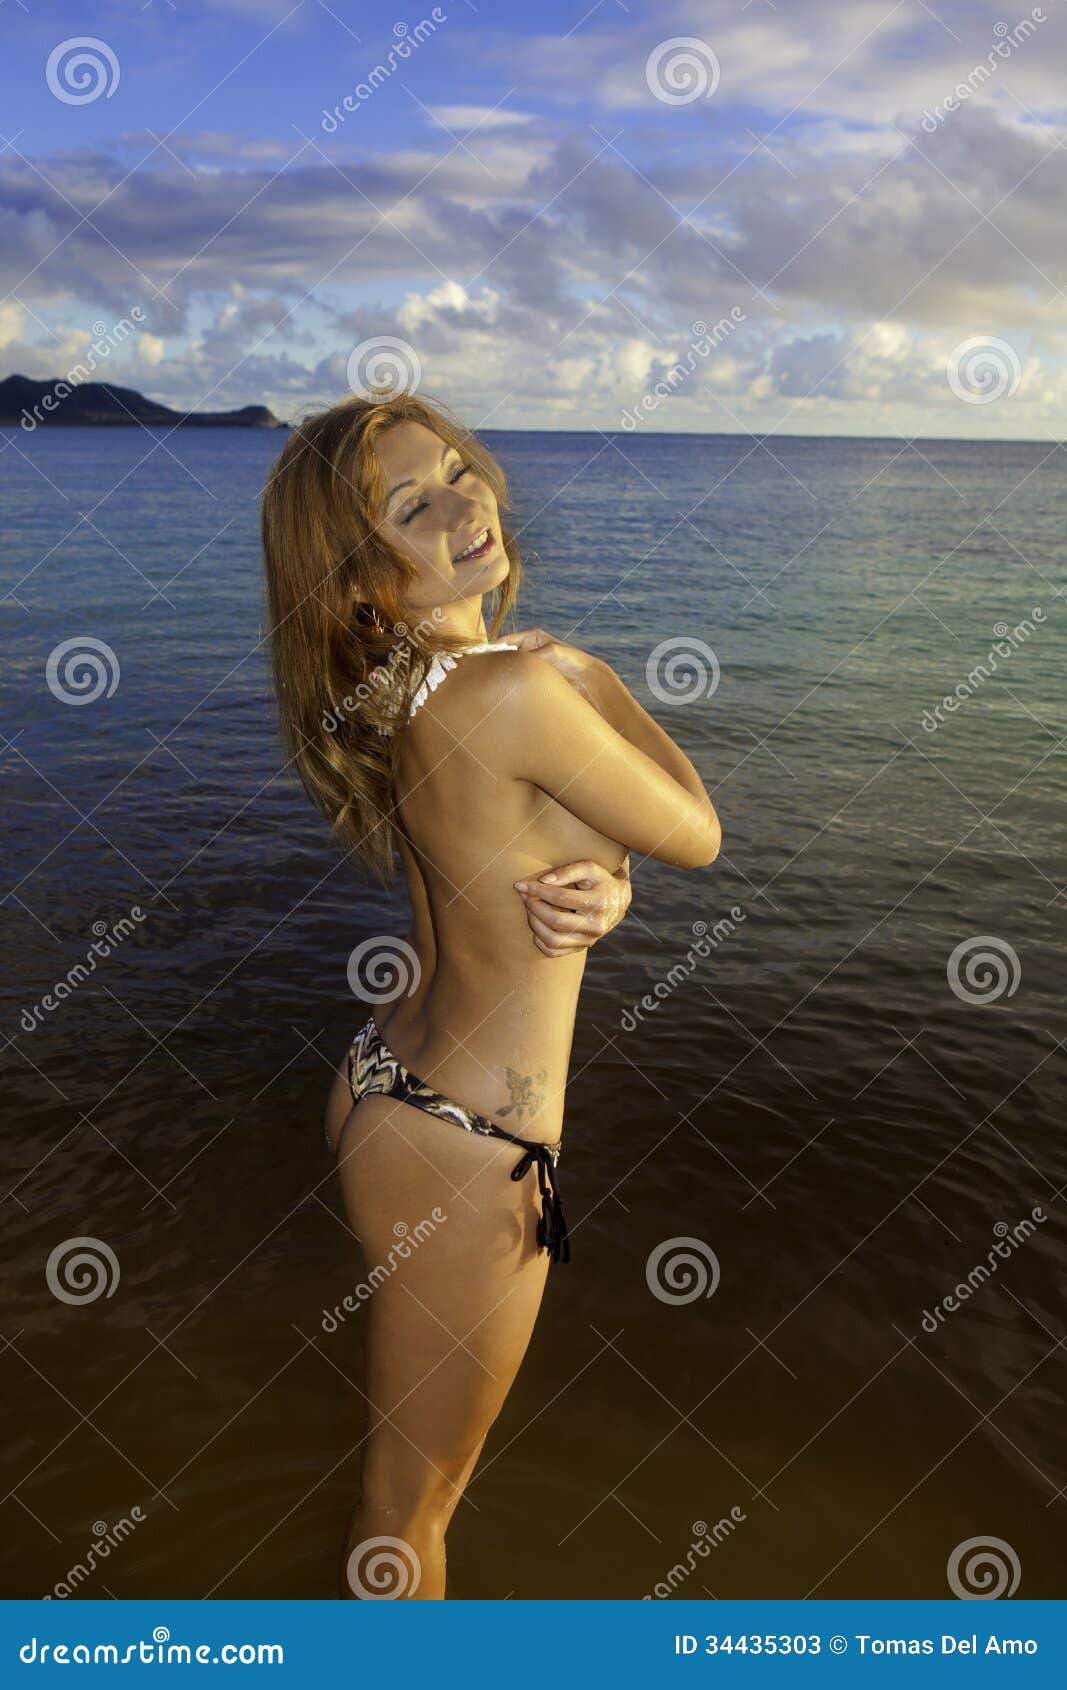 Redhead Women Topless Bikini